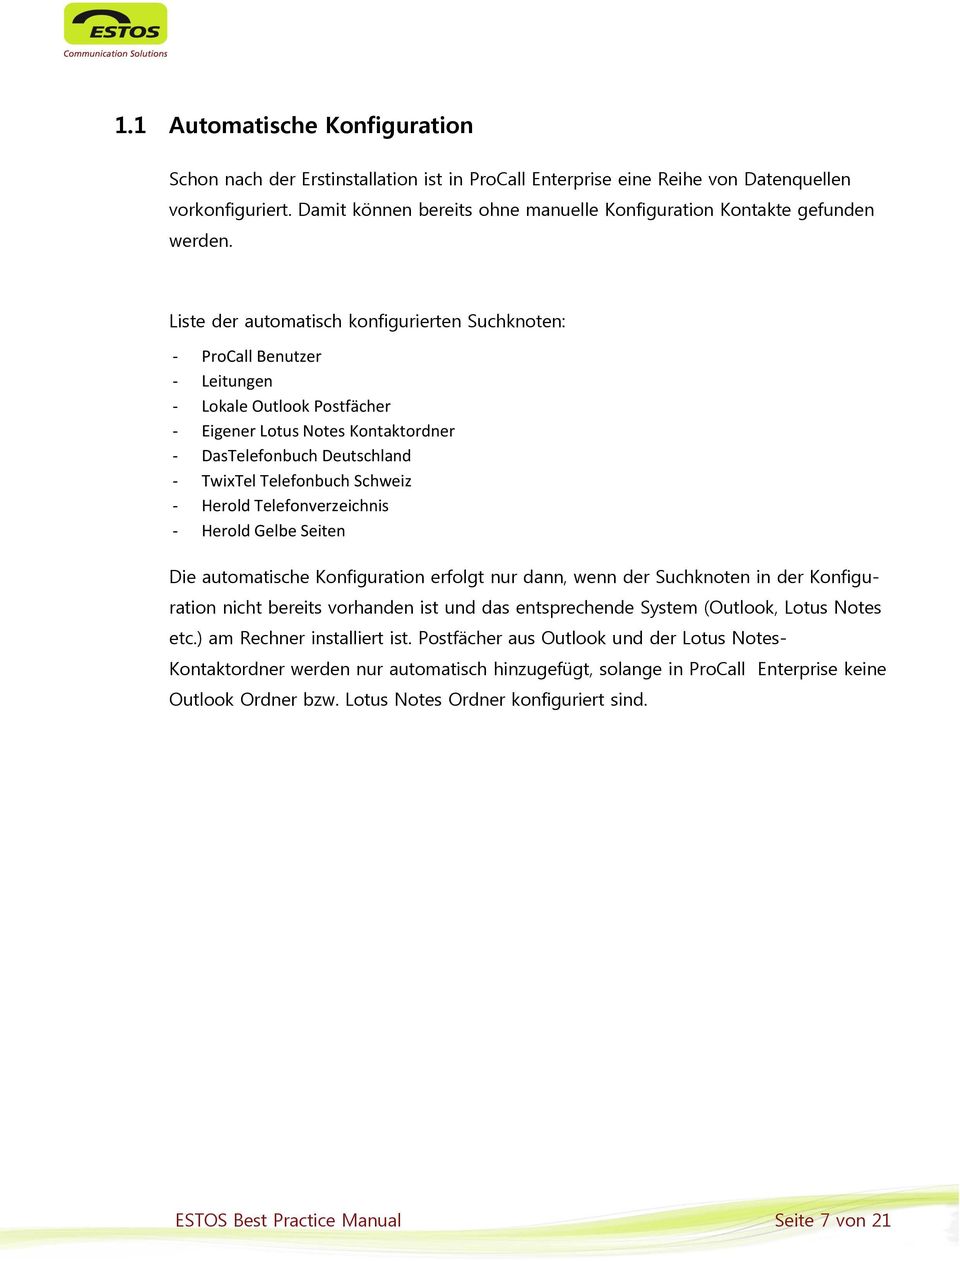 Liste der automatisch konfigurierten Suchknoten: - ProCall Benutzer - Leitungen - Lokale Outlook Postfächer - Eigener Lotus Notes Kontaktordner - DasTelefonbuch Deutschland - TwixTel Telefonbuch